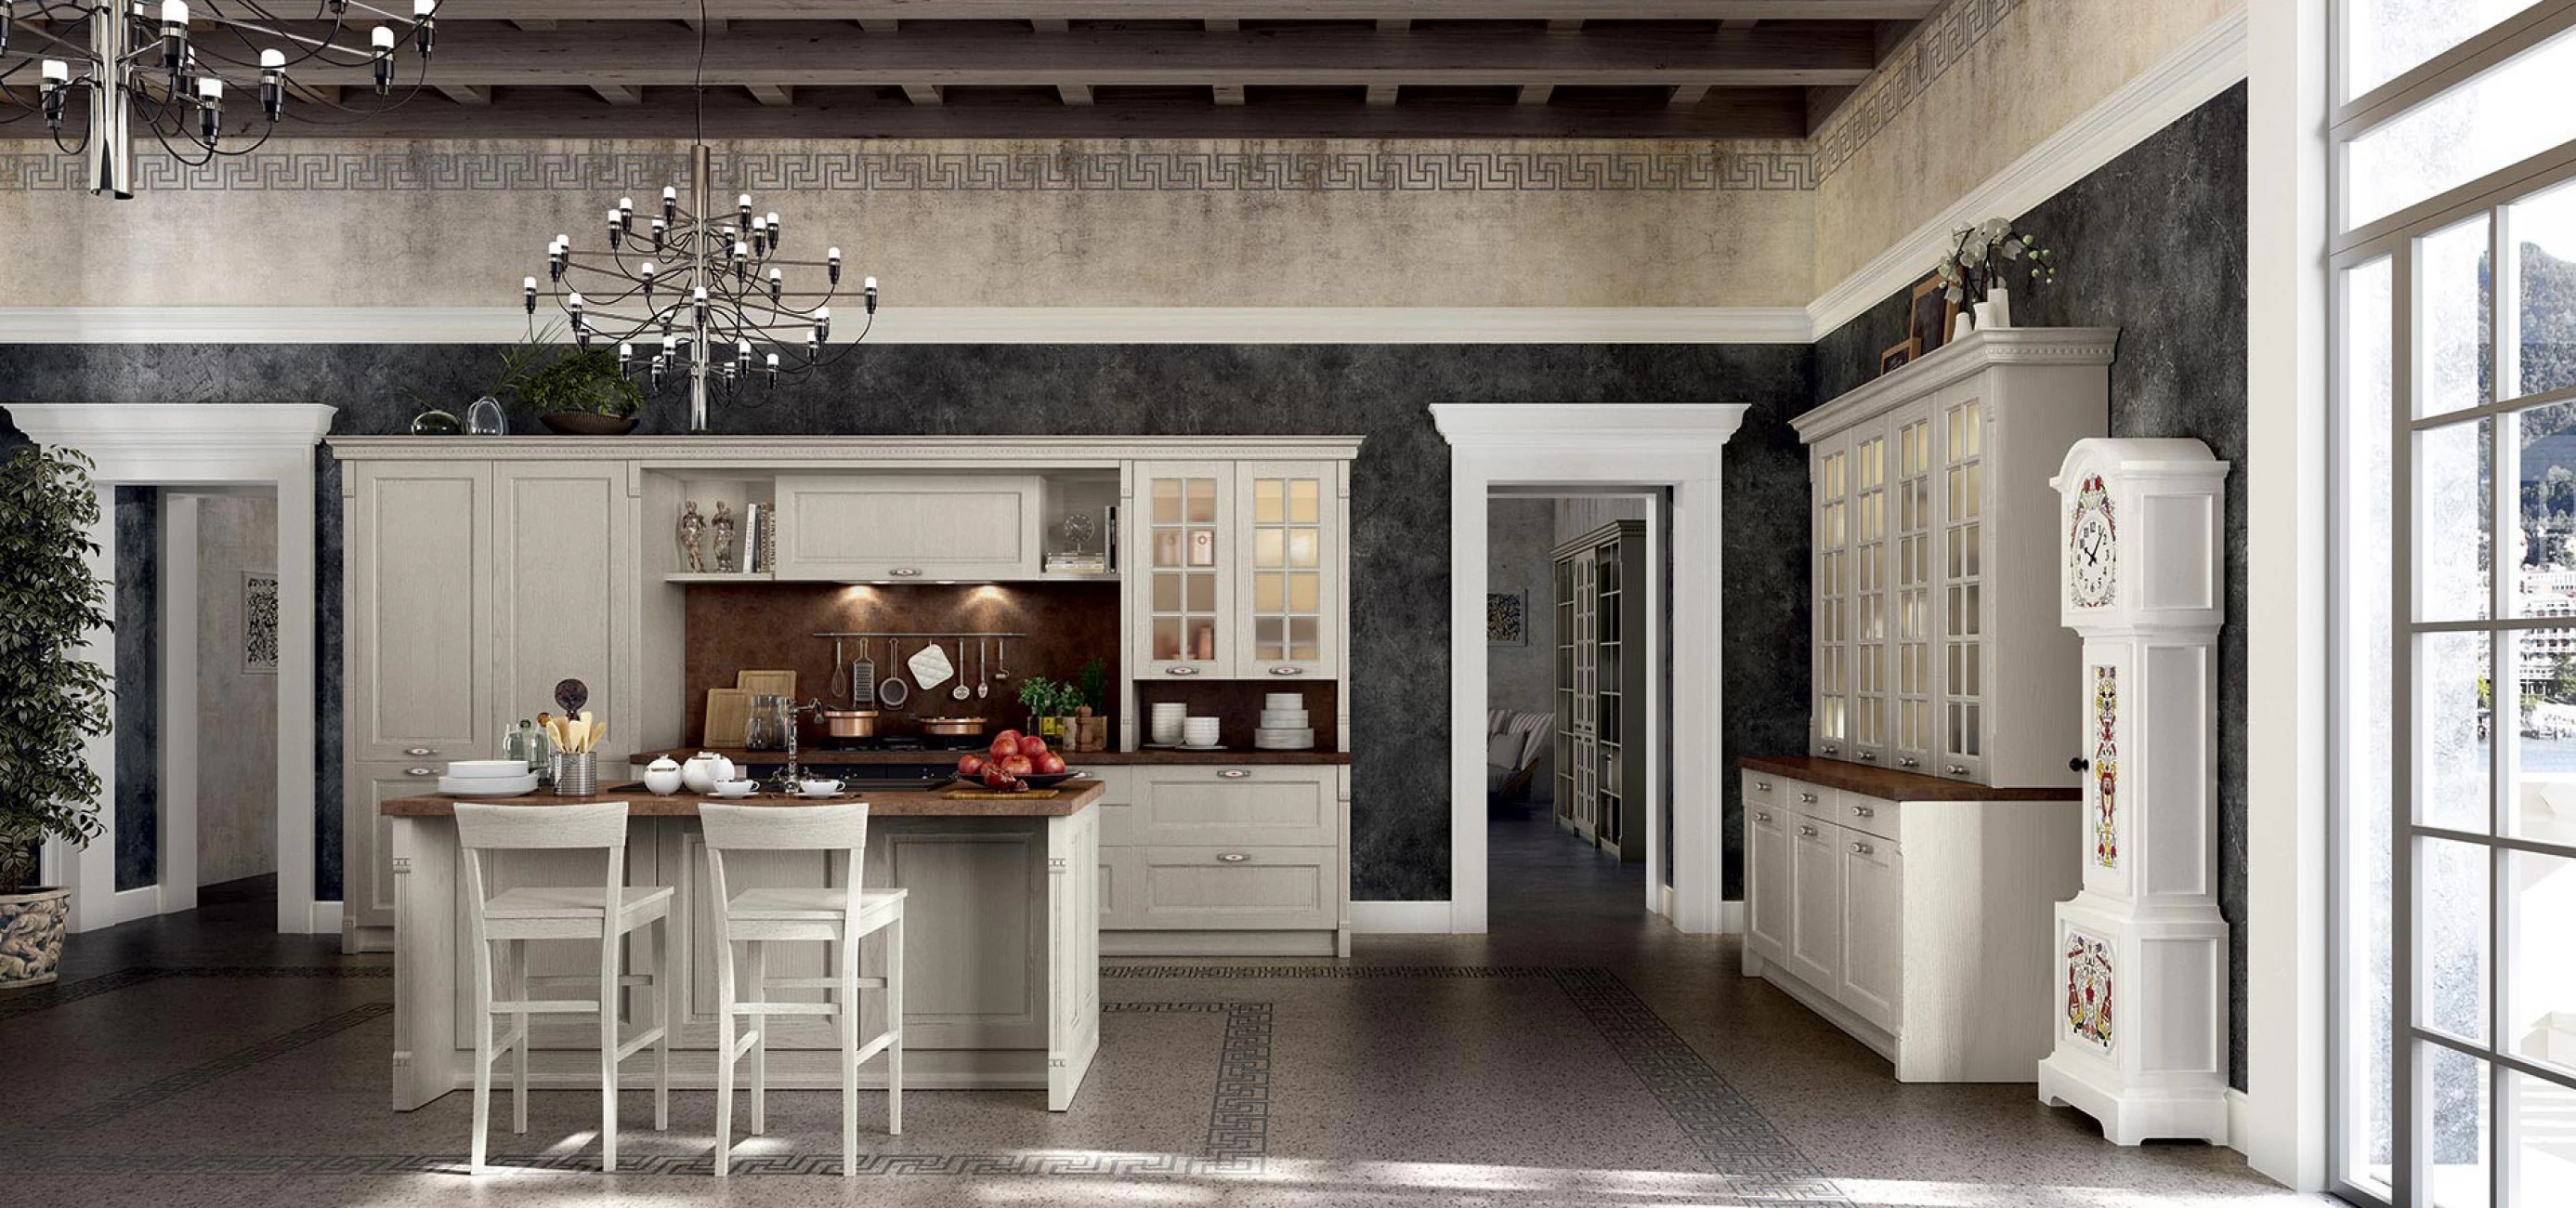 Итальянская кухня VIRGINIA в классическом стиле от фабрики ARREDO3 в белом цвете, 2 стула, продукты и кухонные приборы на столе